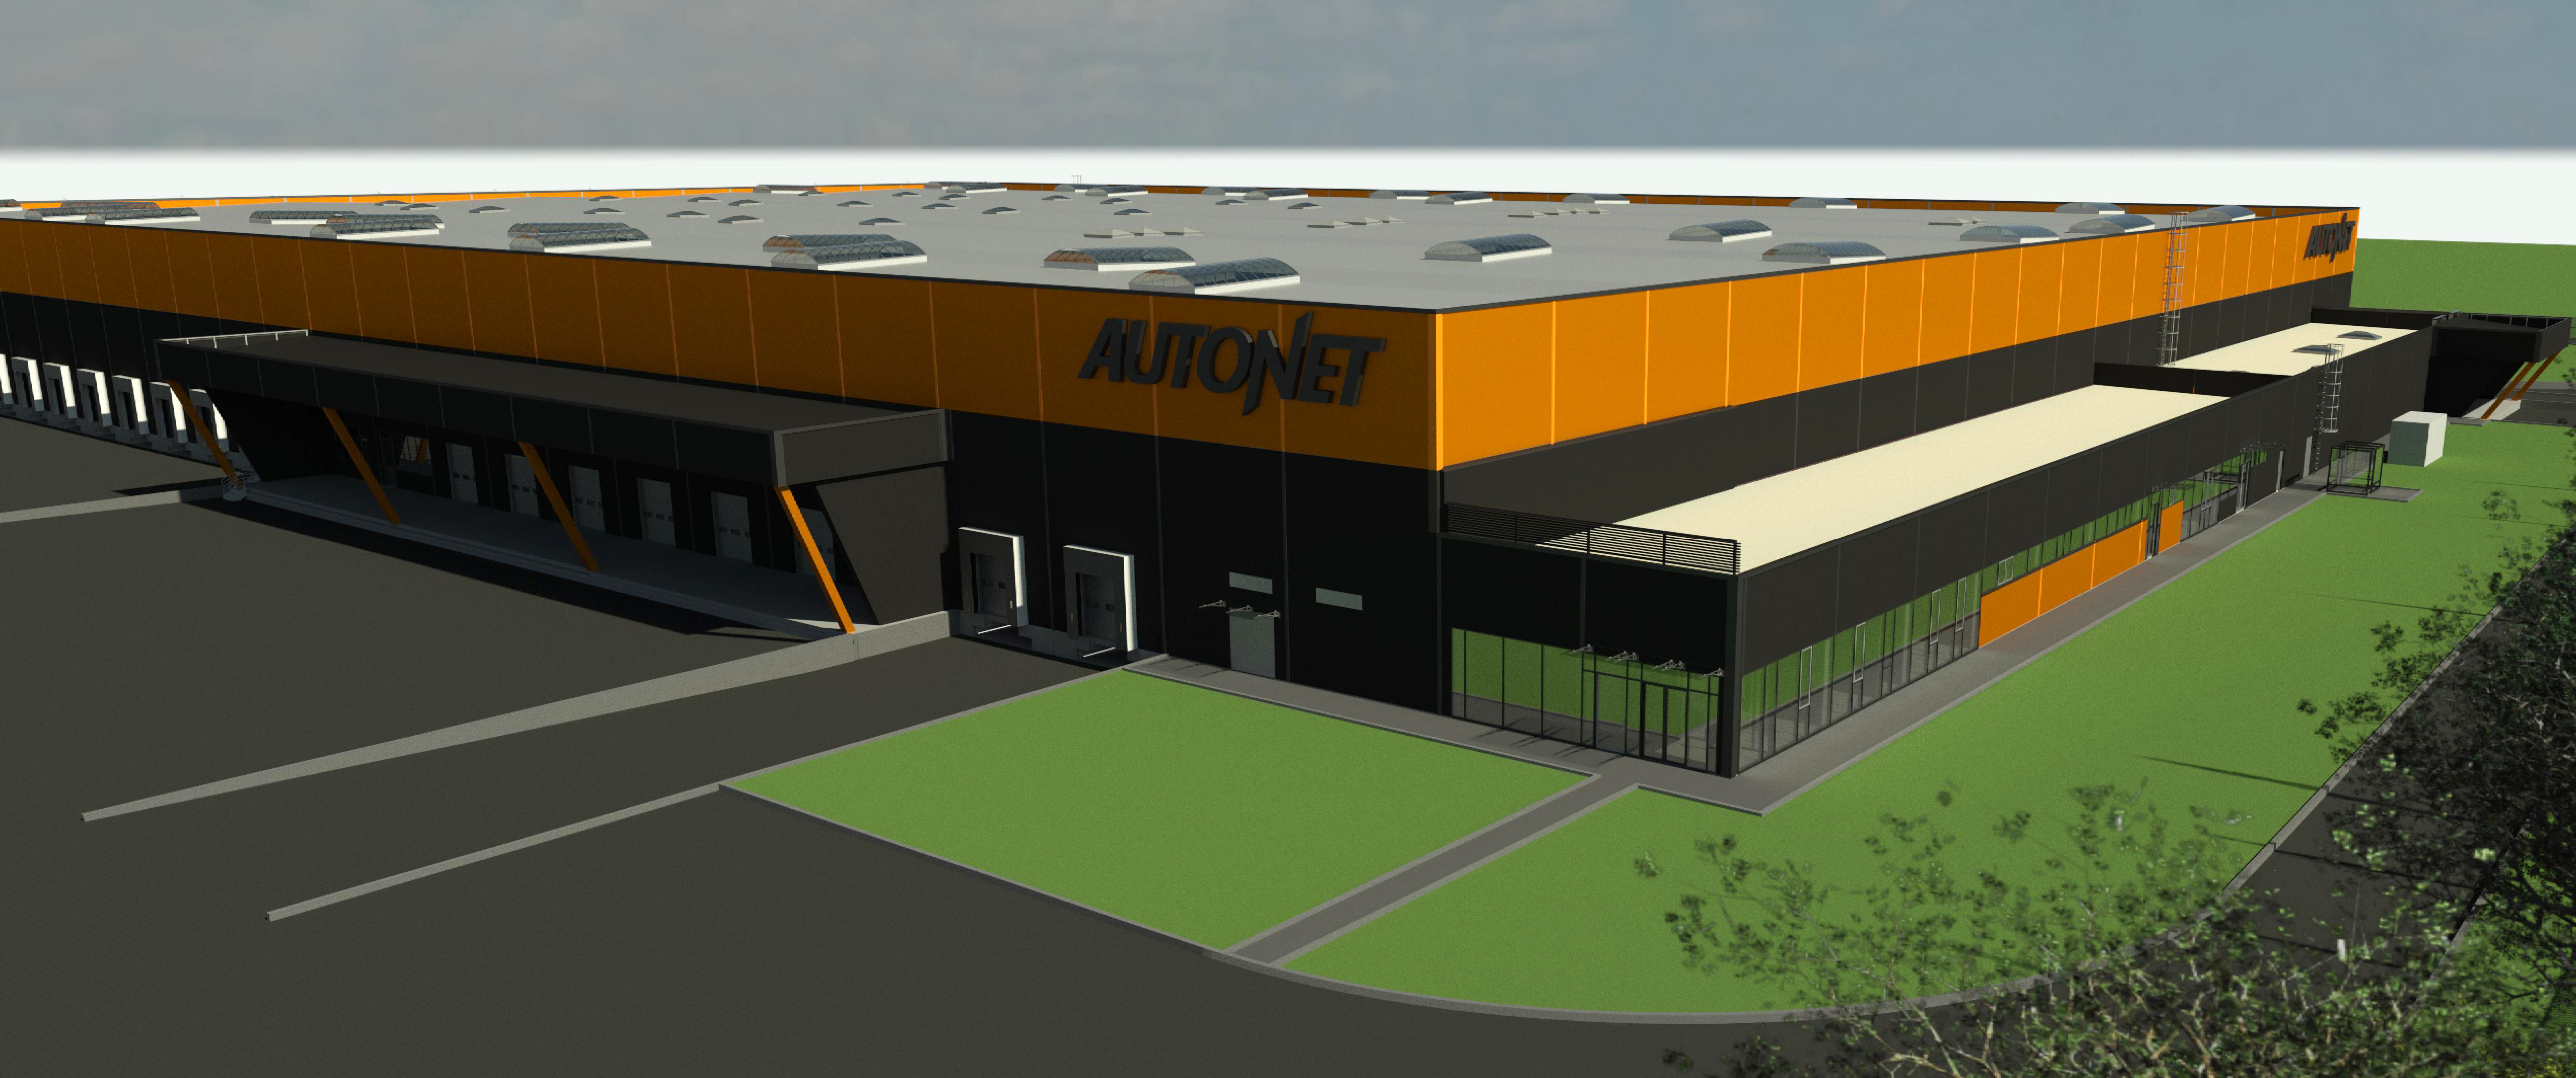 Autonet construiește un nou centru de distribuție robotizat lângă Turda